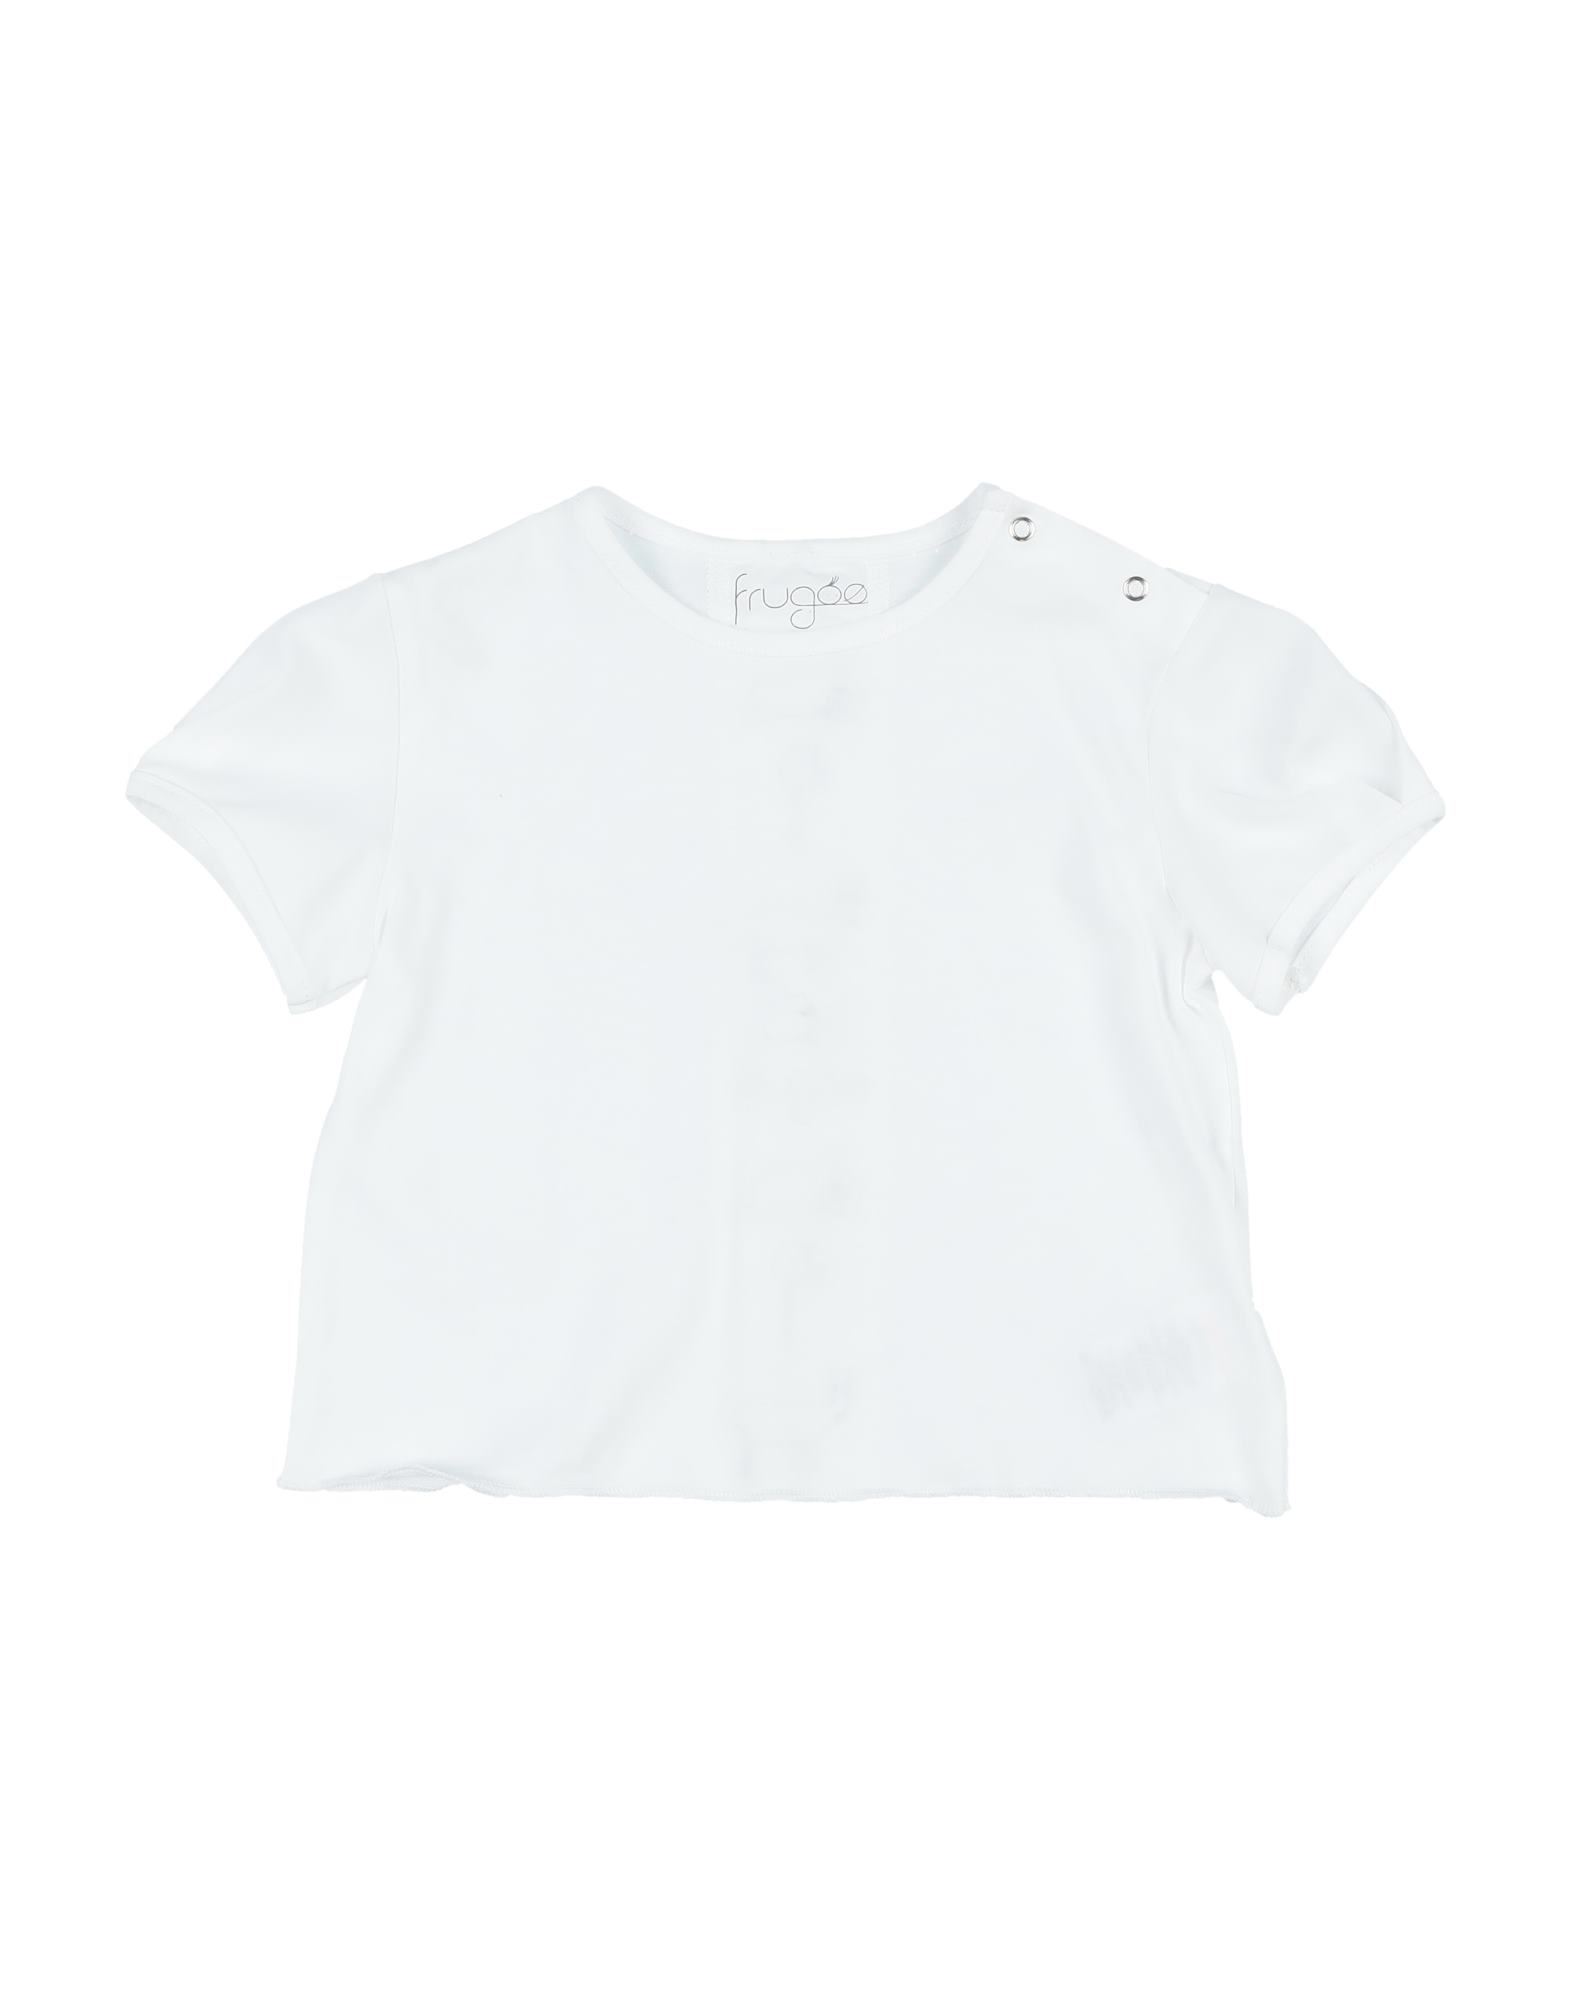 FRUGOO T-shirts Kinder Weiß von FRUGOO